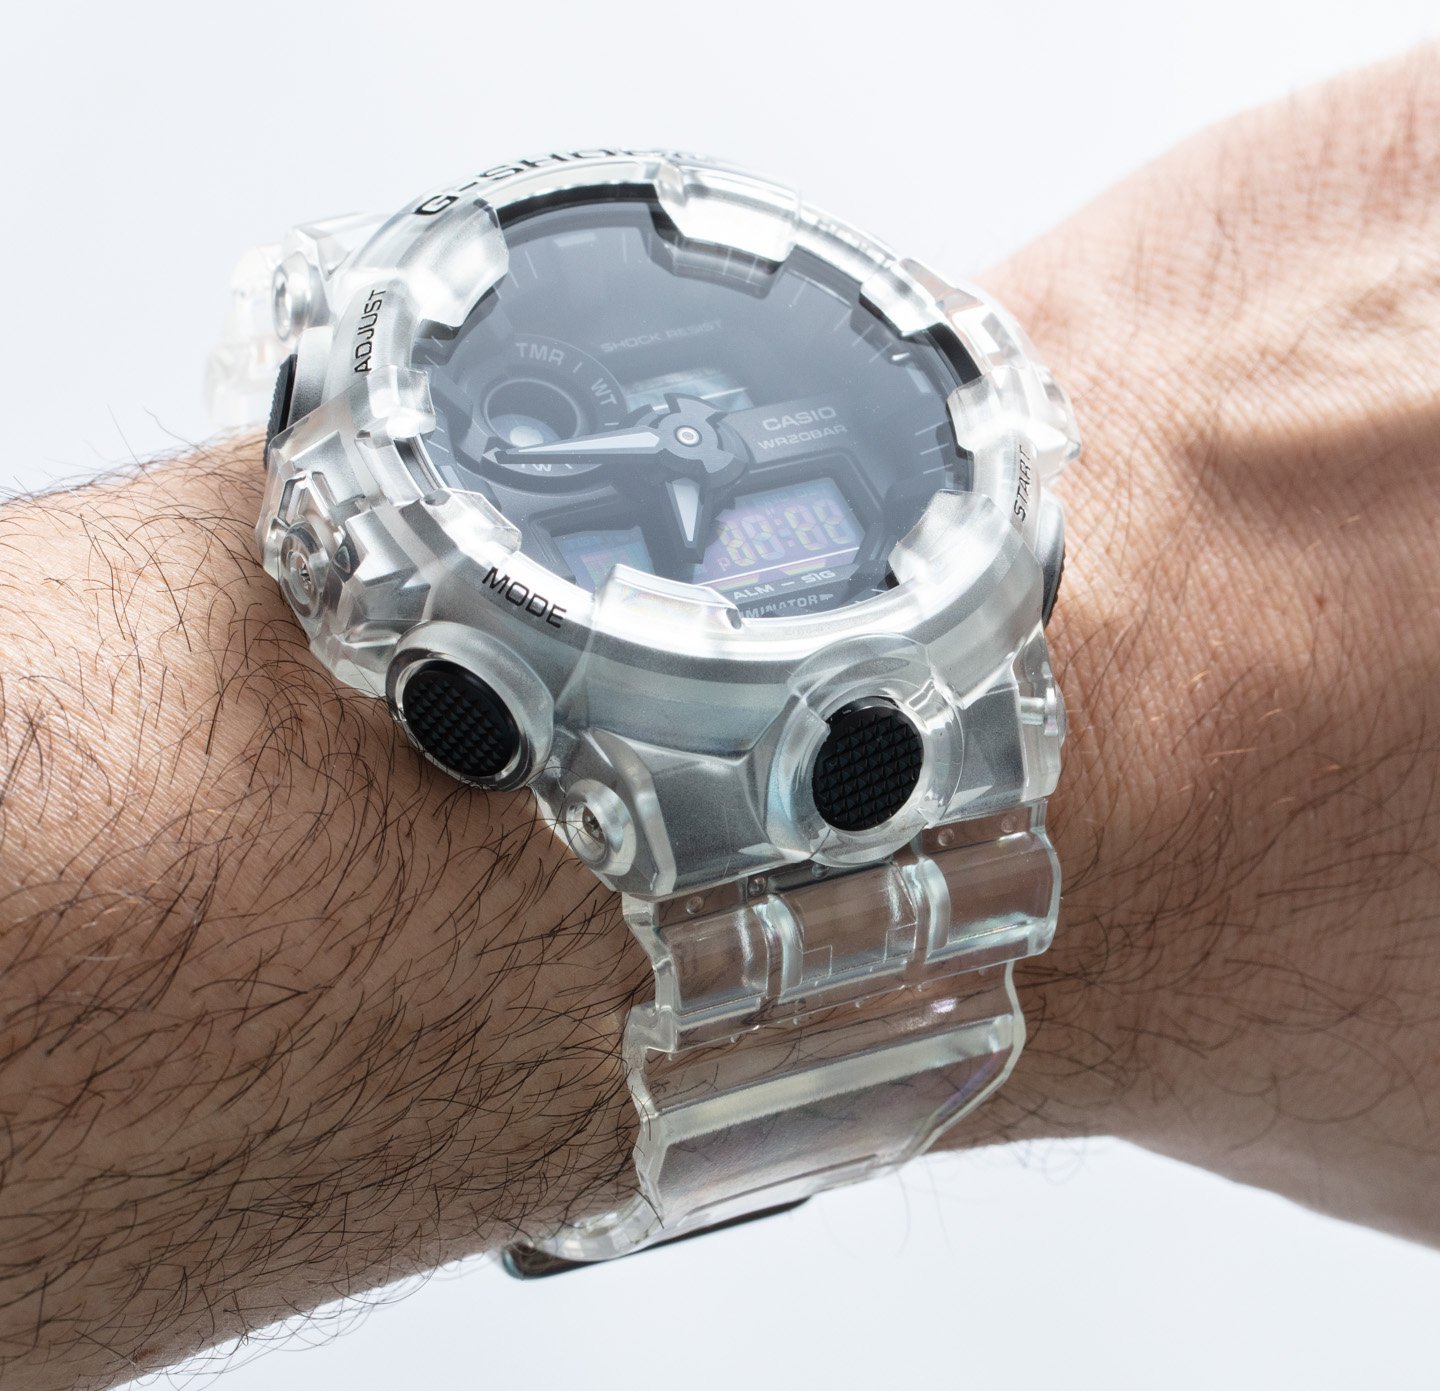 Прозрачные часы Casio G-Shock: Уникальность и удовольствие с часами GA700SKE-7A